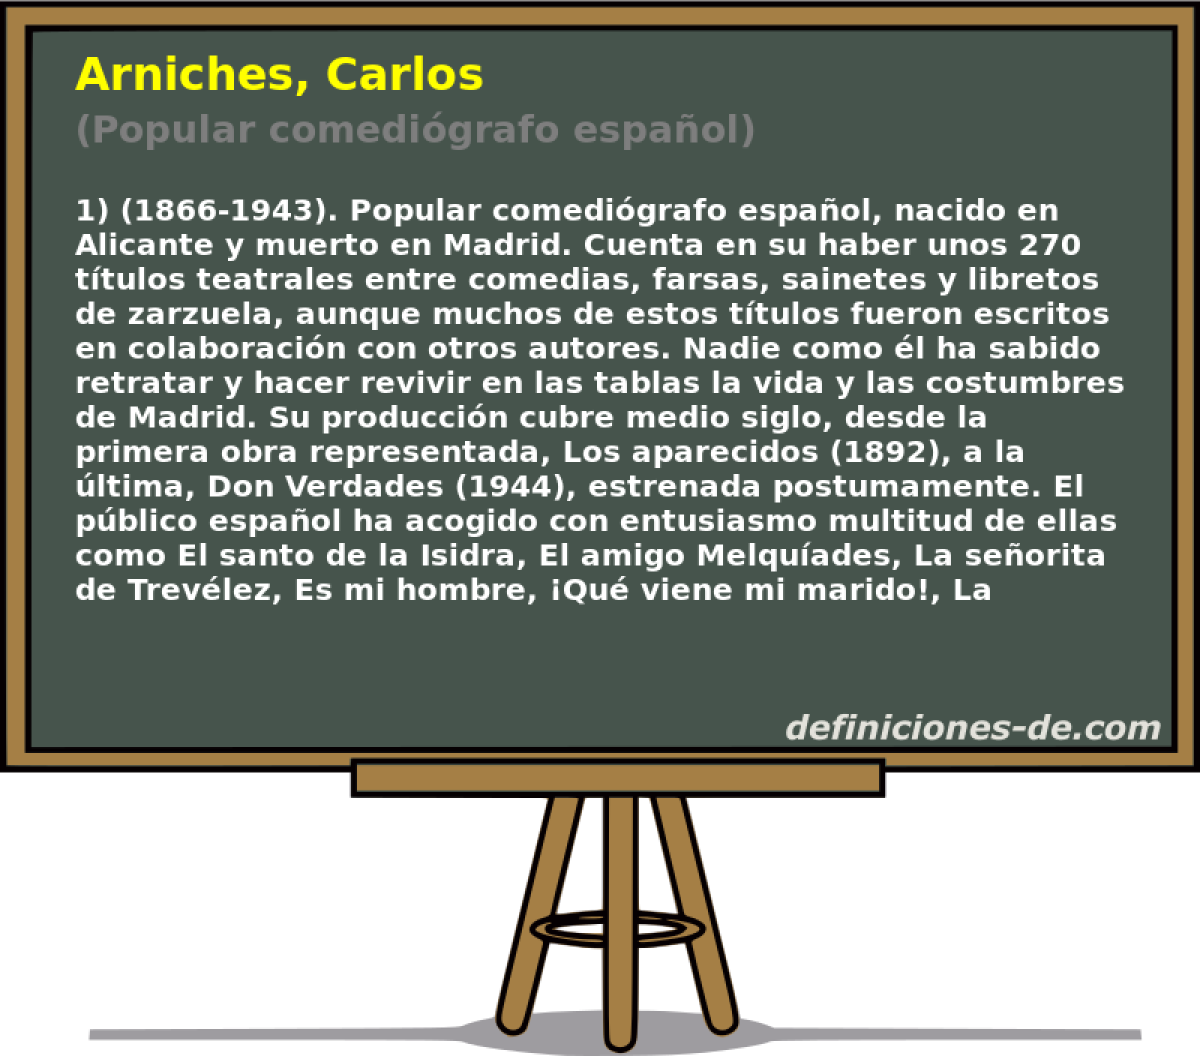 Arniches, Carlos (Popular comedigrafo espaol)